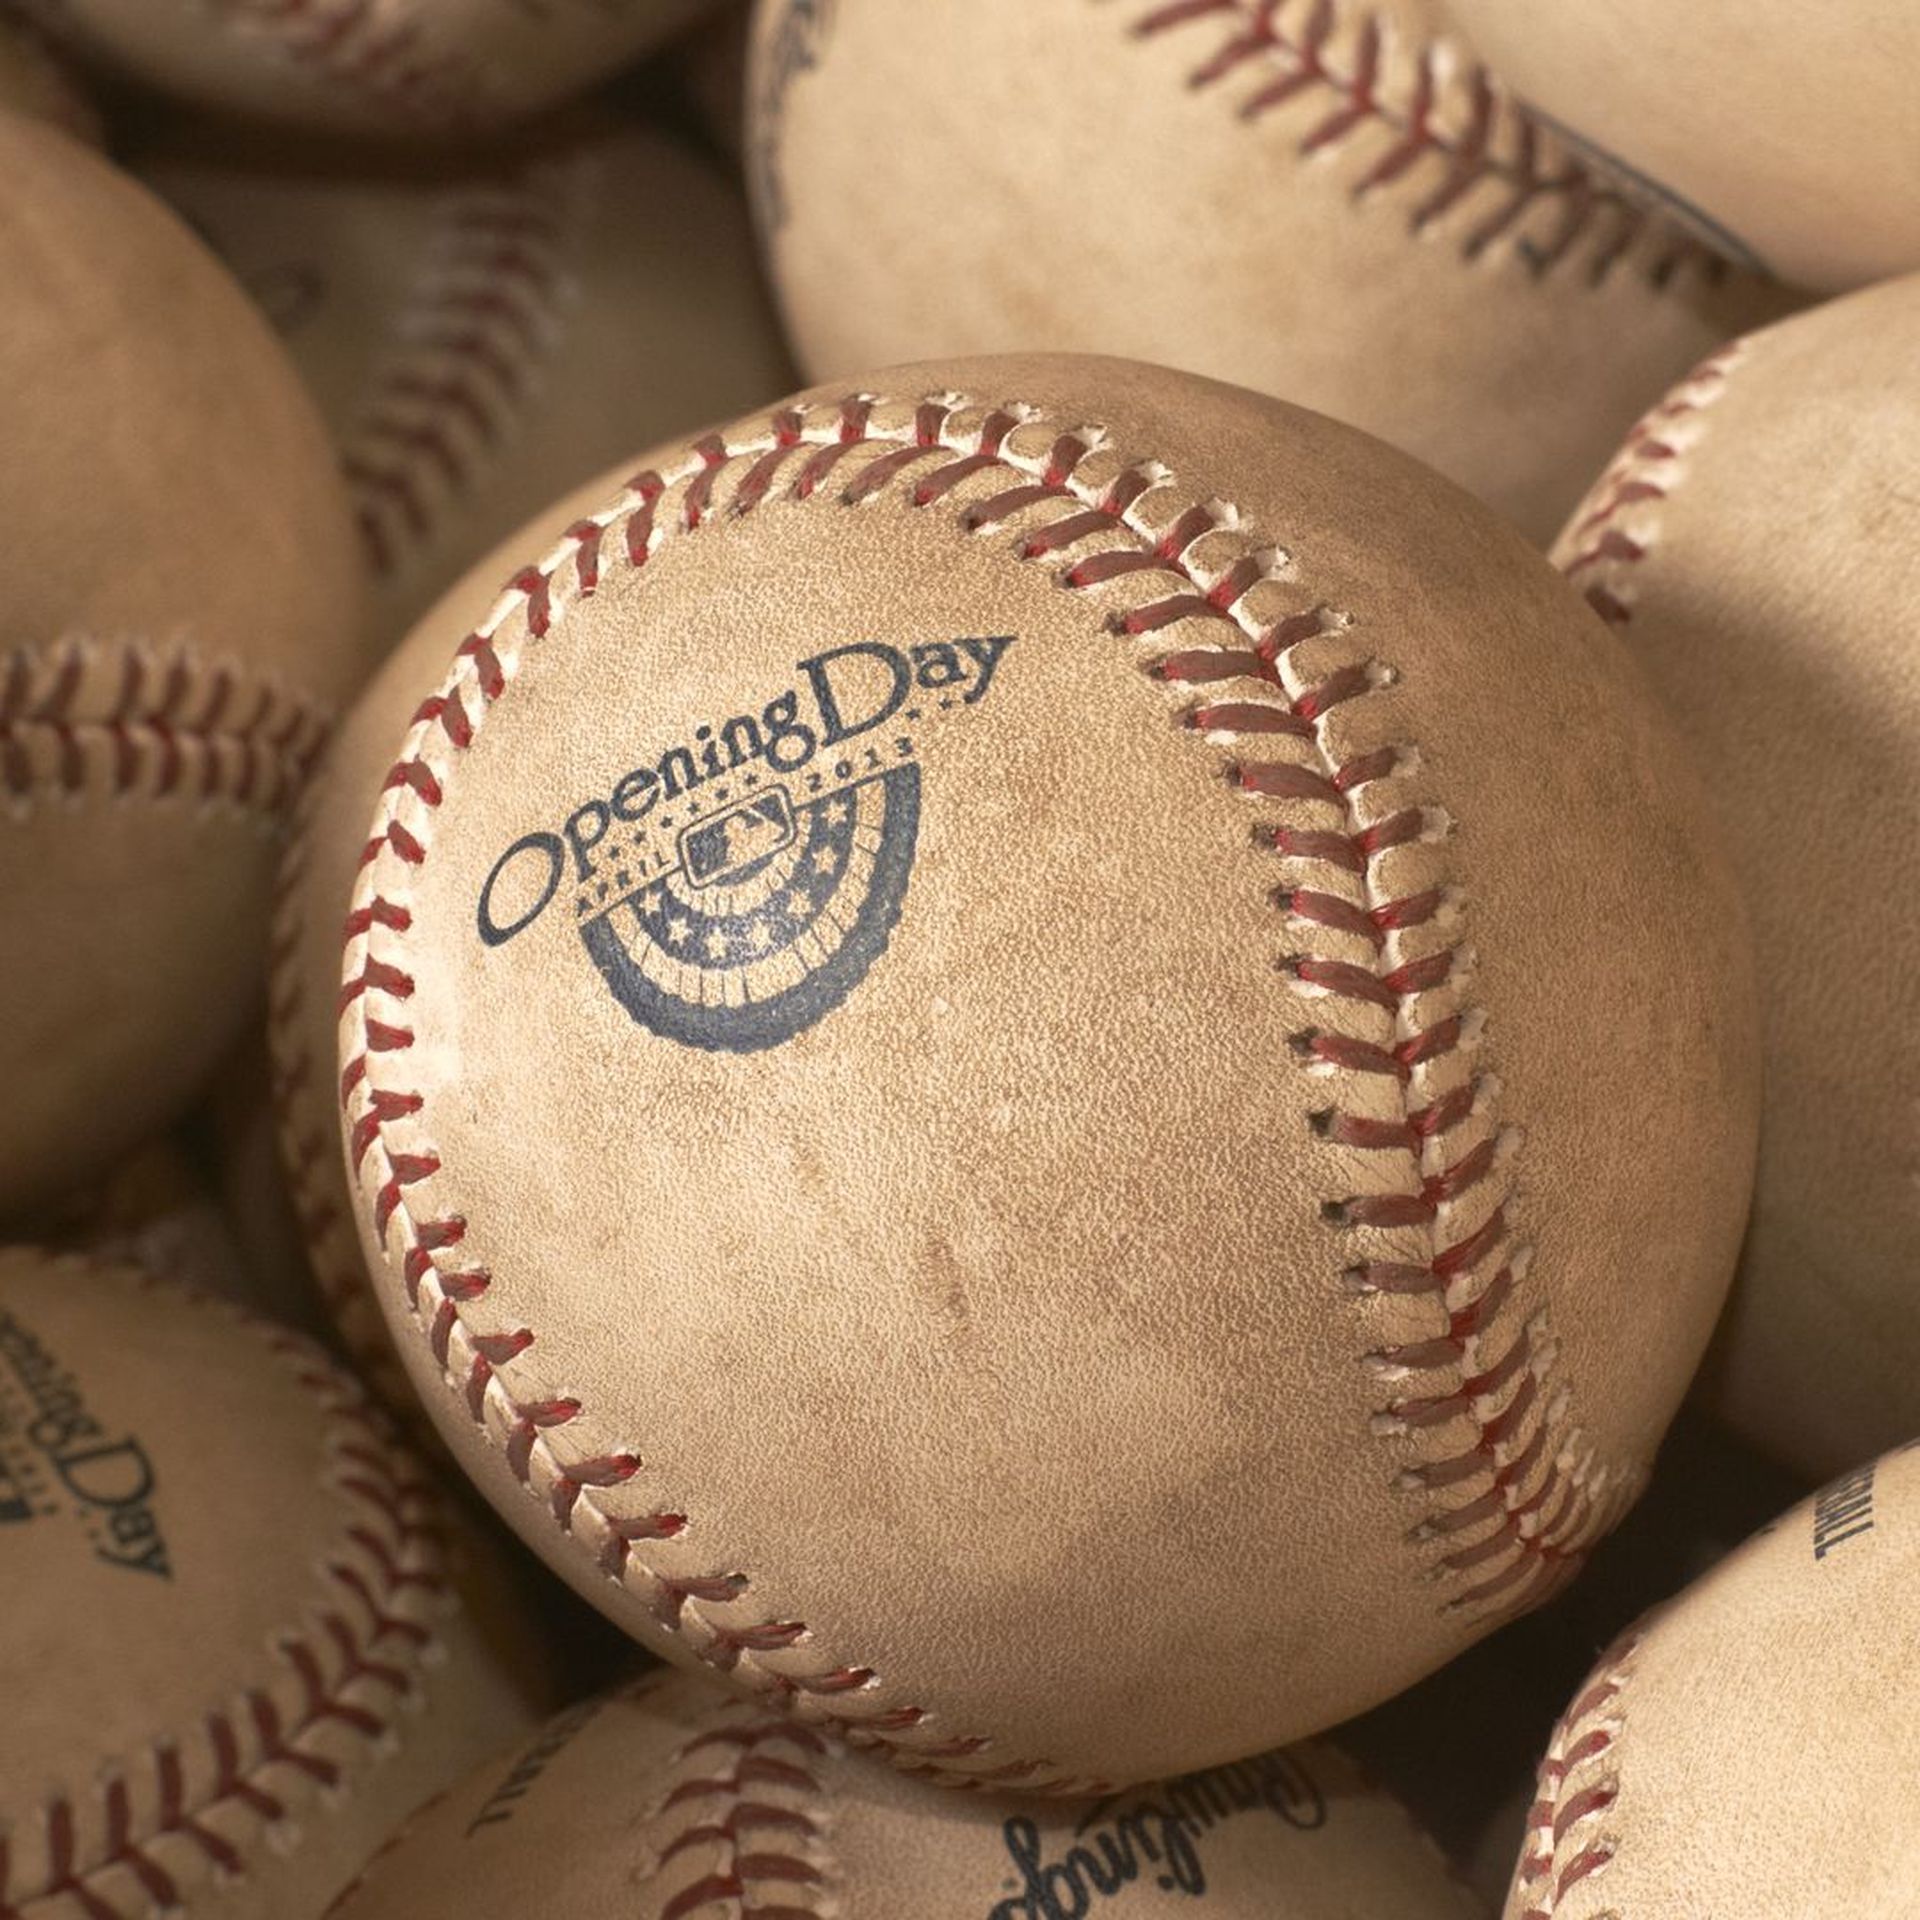 MLB standardizes ball muddying process